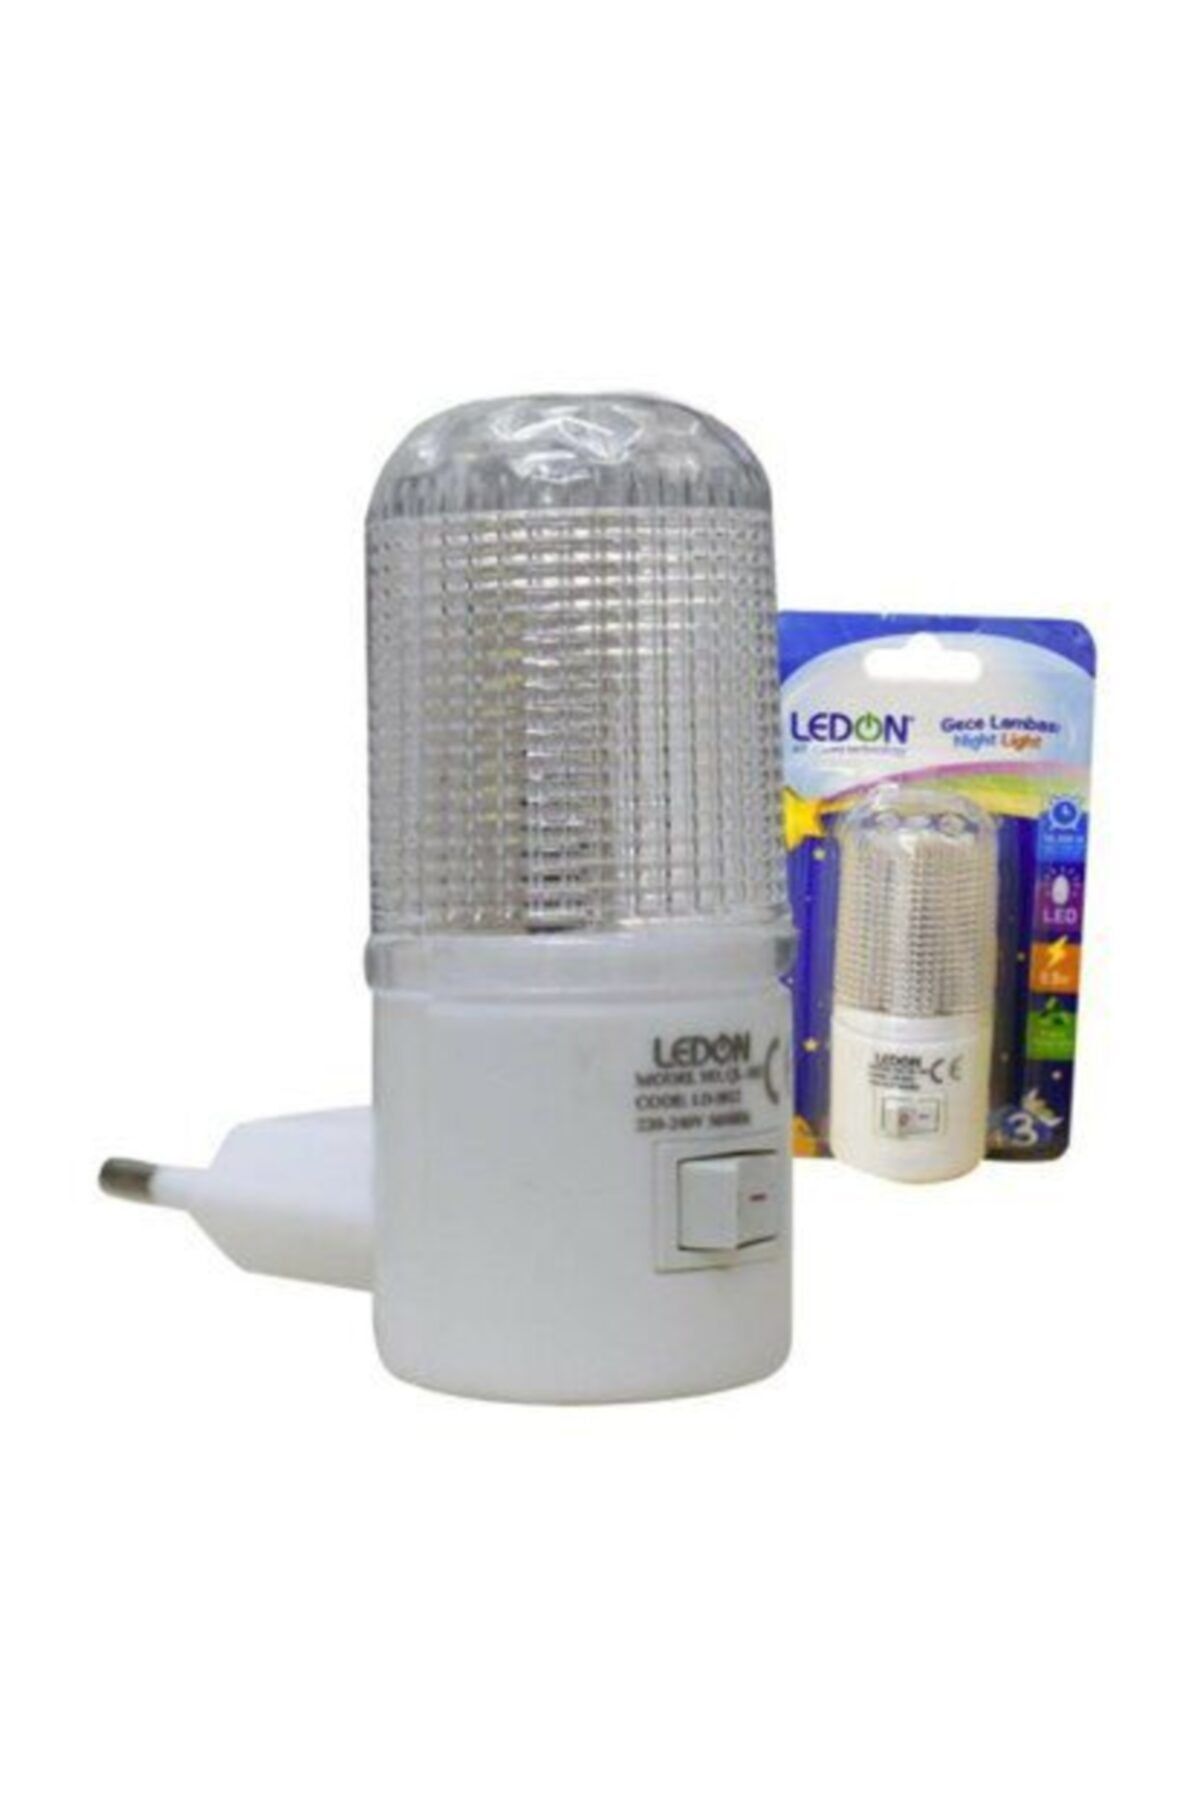 LEDON Ledli Gece Lambası Anahtarlı 0.5 Watt (garantili)